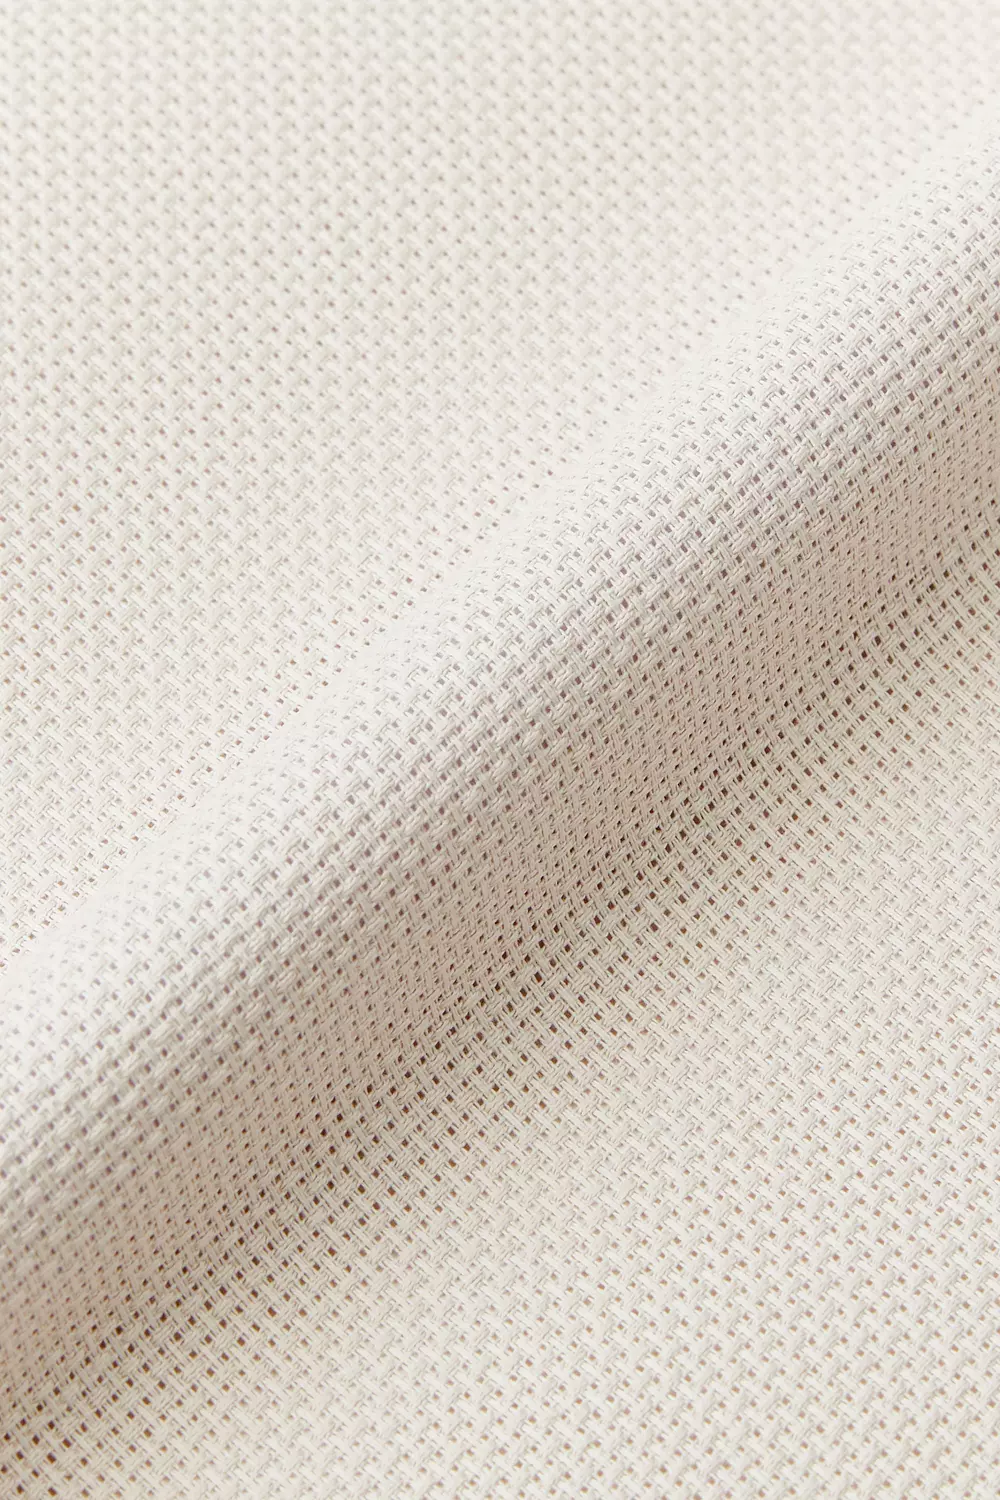 50 x 54 cm Aida 16 ecru cross stitch fabric | 6,4 stitches per cm